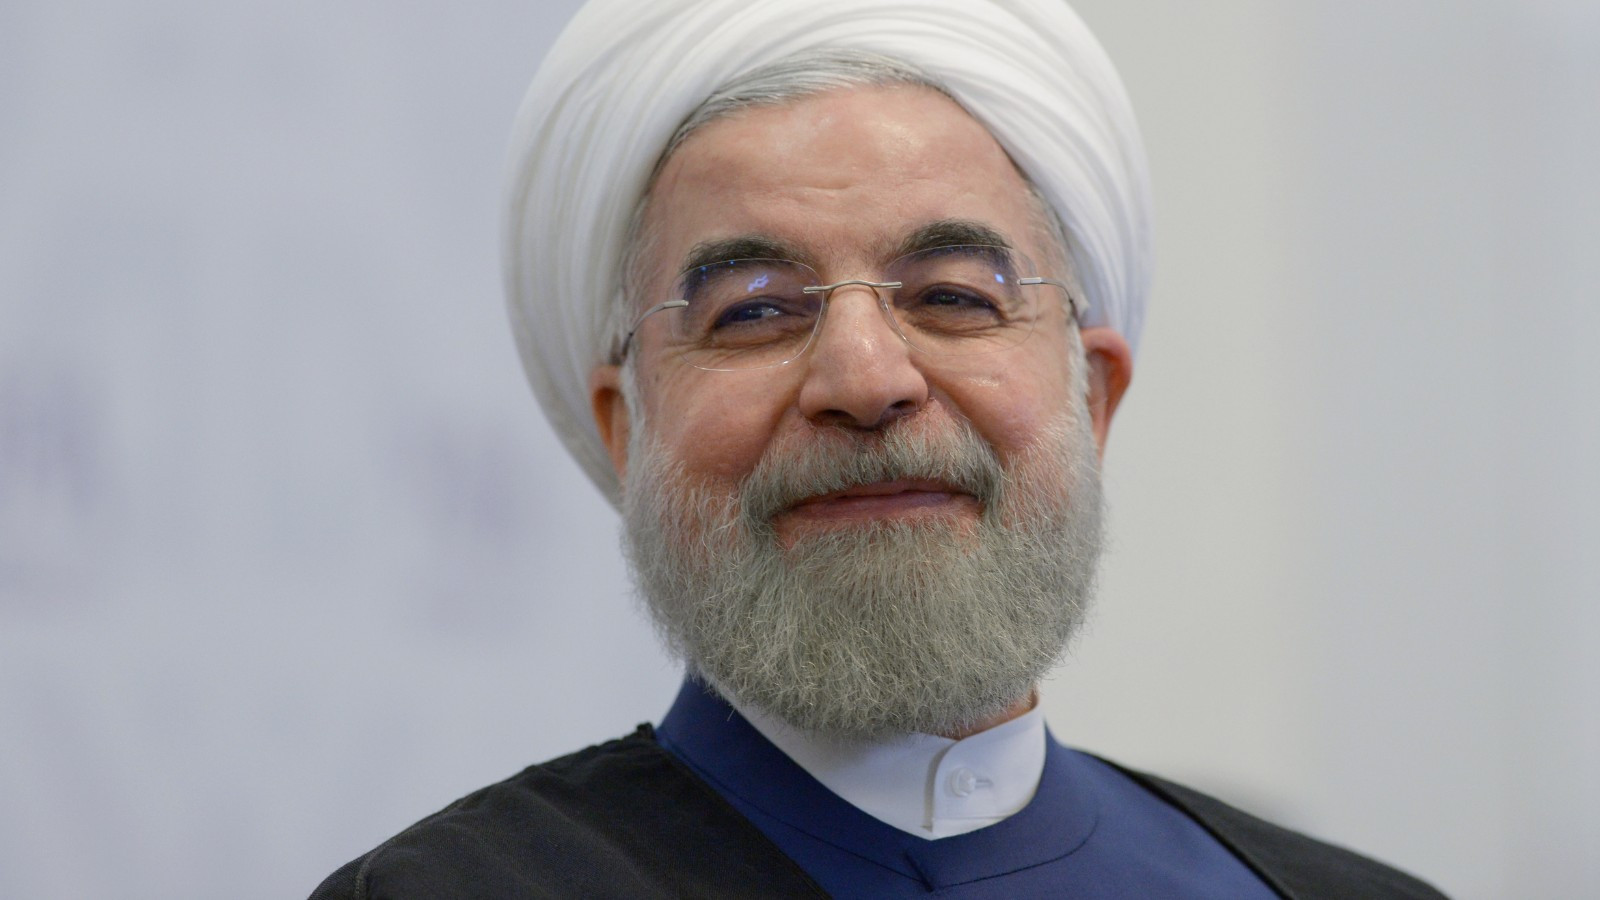 Kết quả hình ảnh cho picture of Rouhani